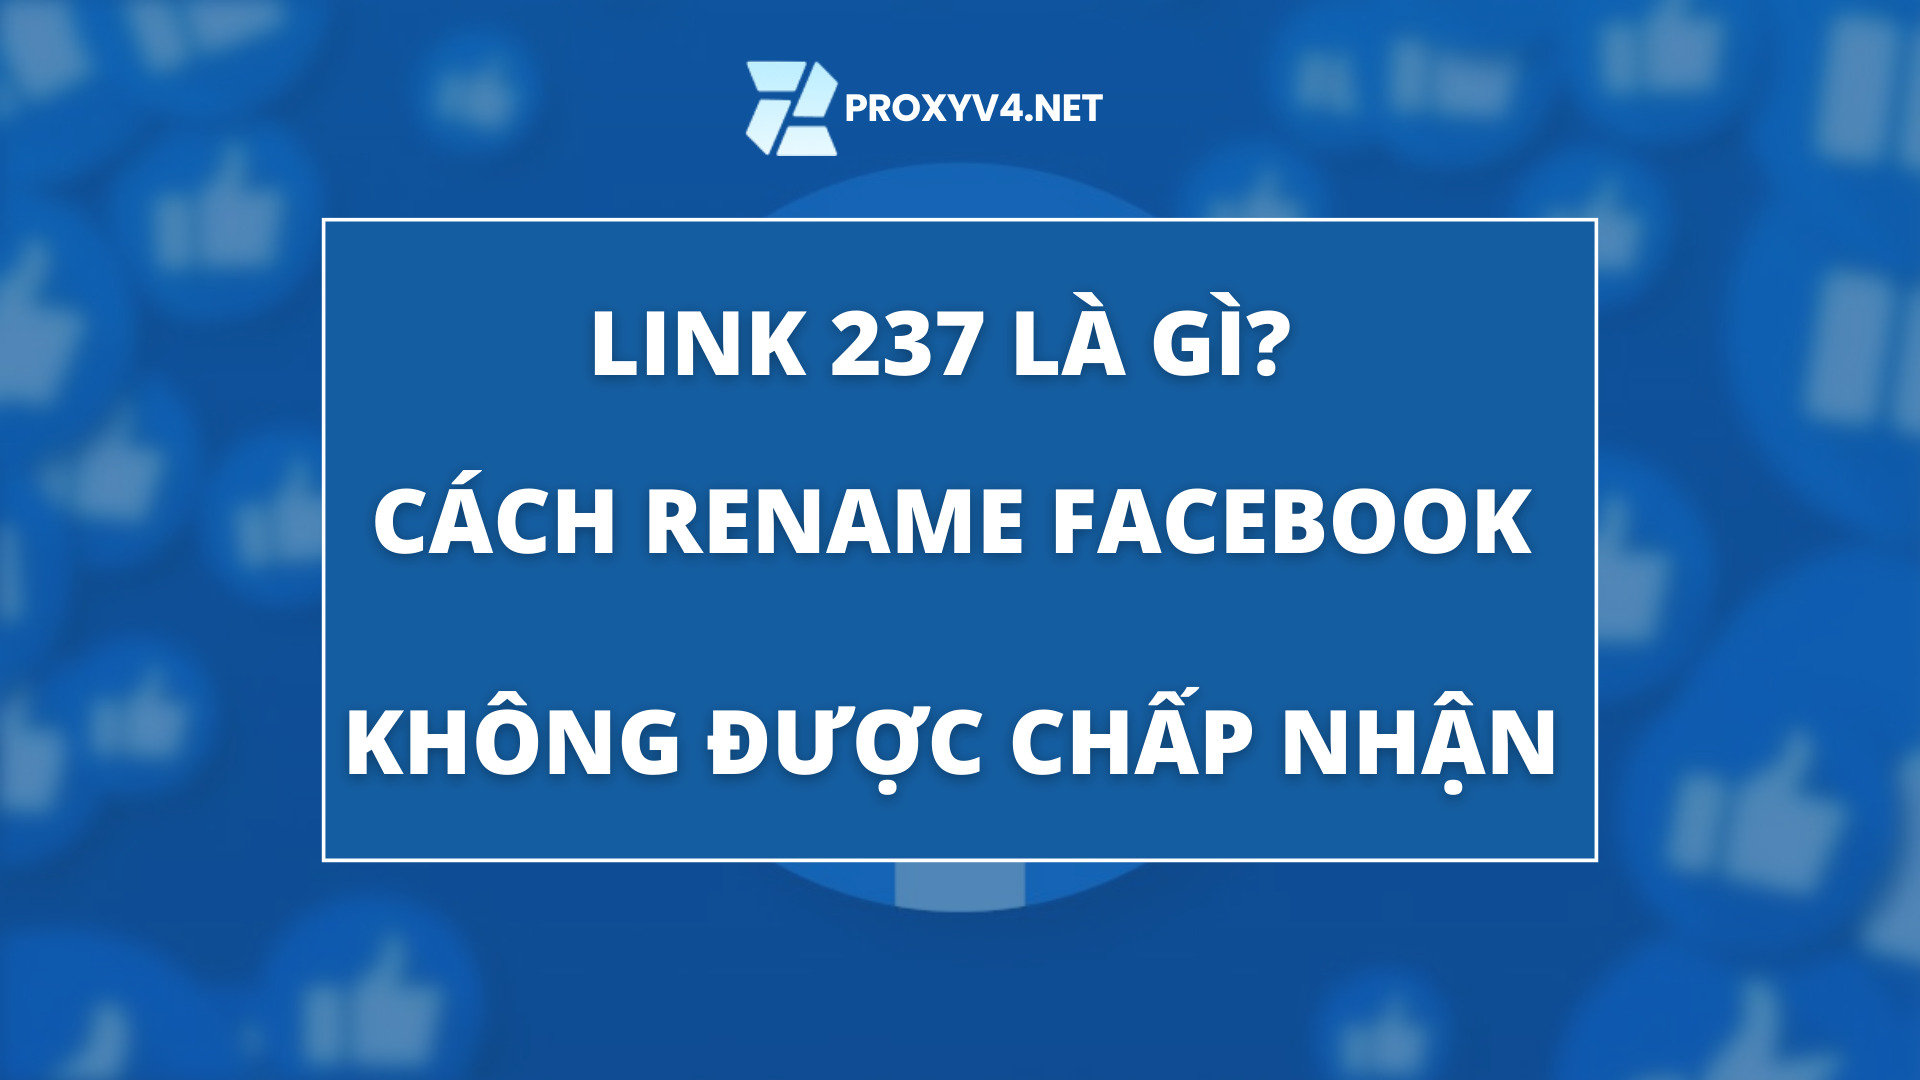 Link 237 là gì? Cách rename Facebook không được chấp nhận